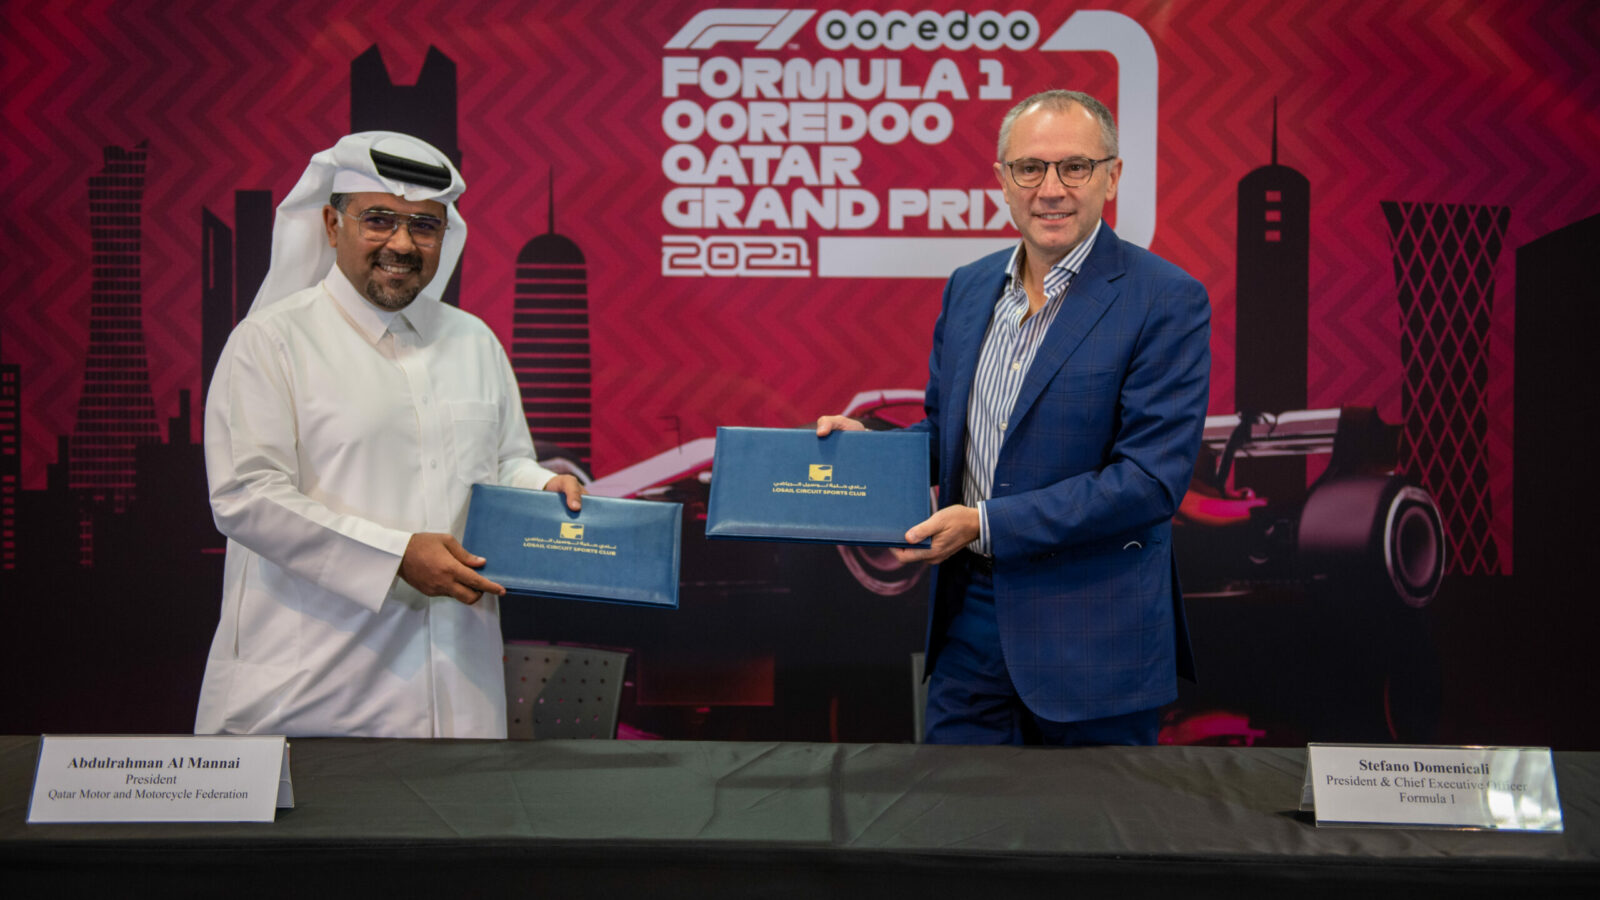 Formel-1: Formel-1 fährt 2021 in Katar